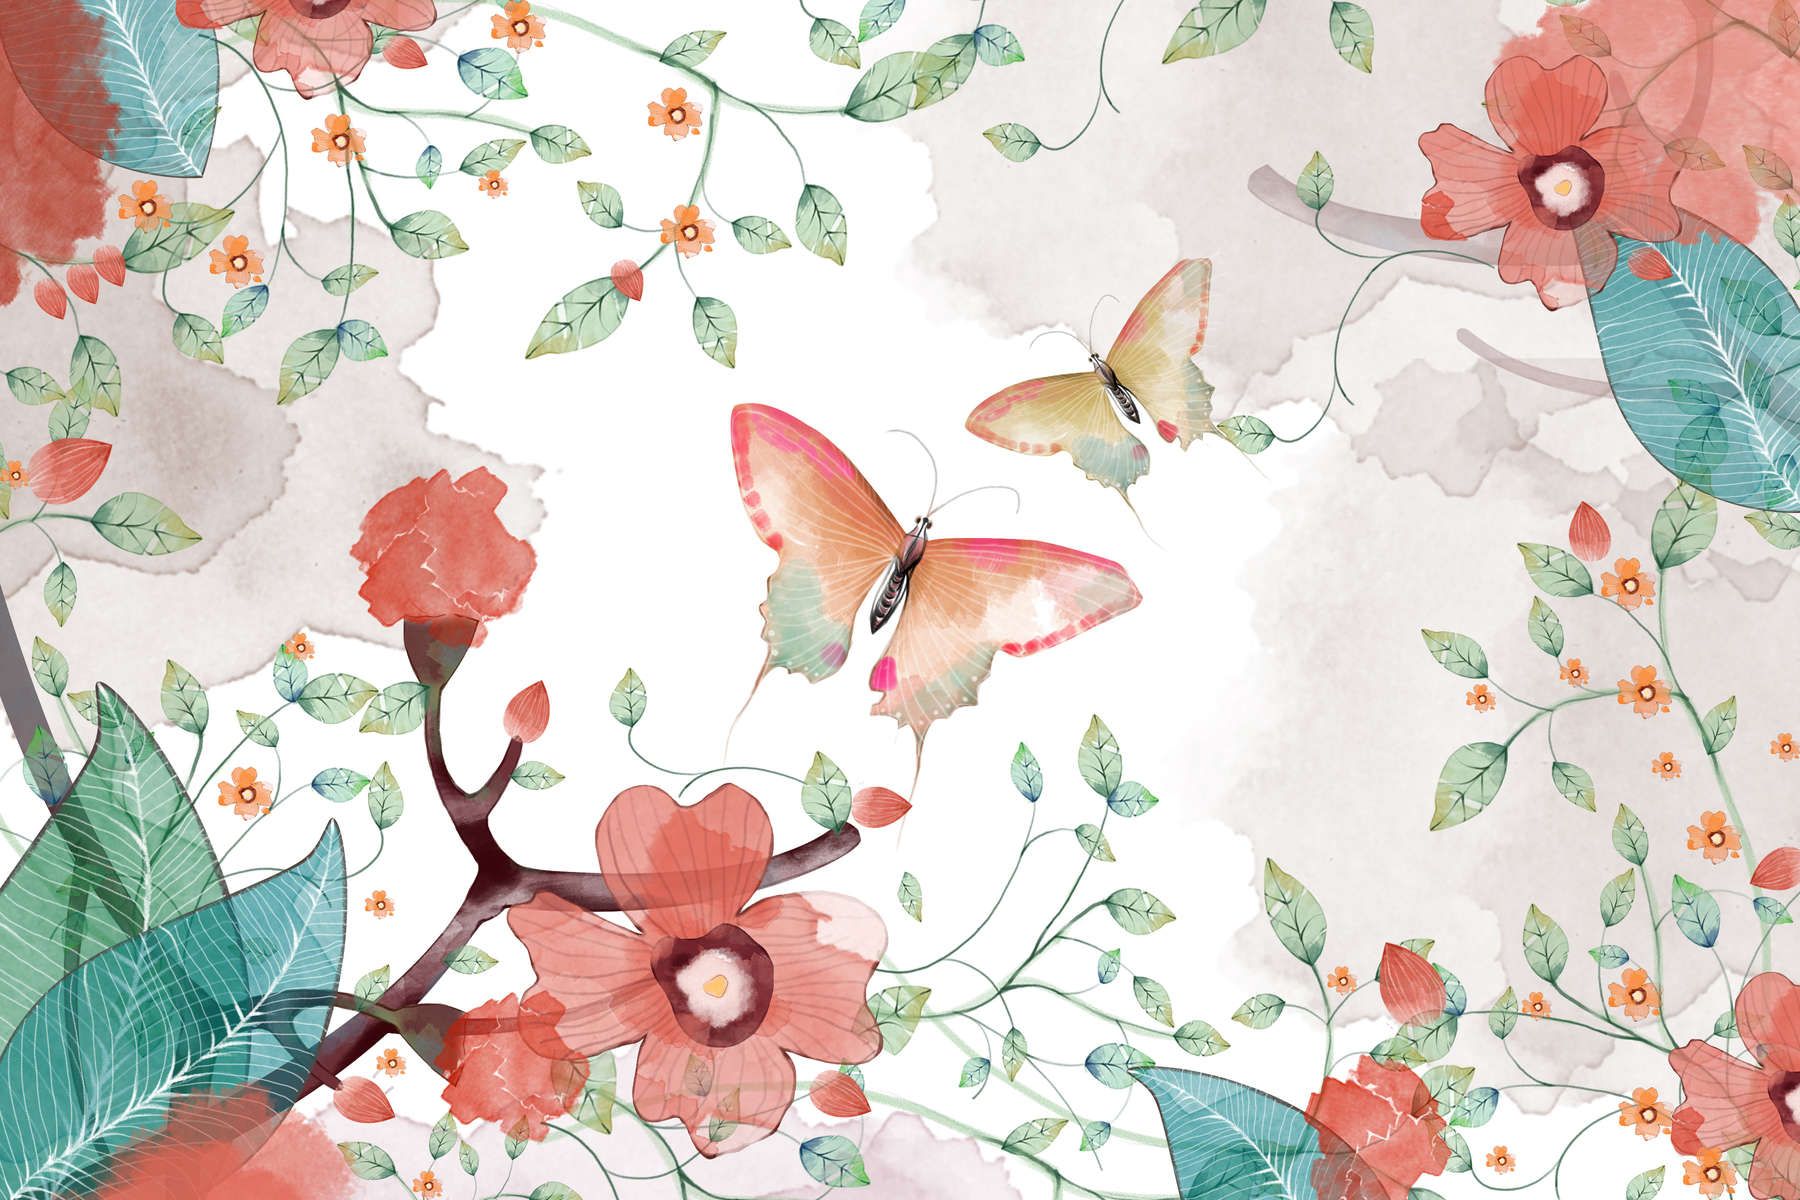             Digital behang bloemen met bladeren en vlinders - Glad & licht glanzend vlies
        